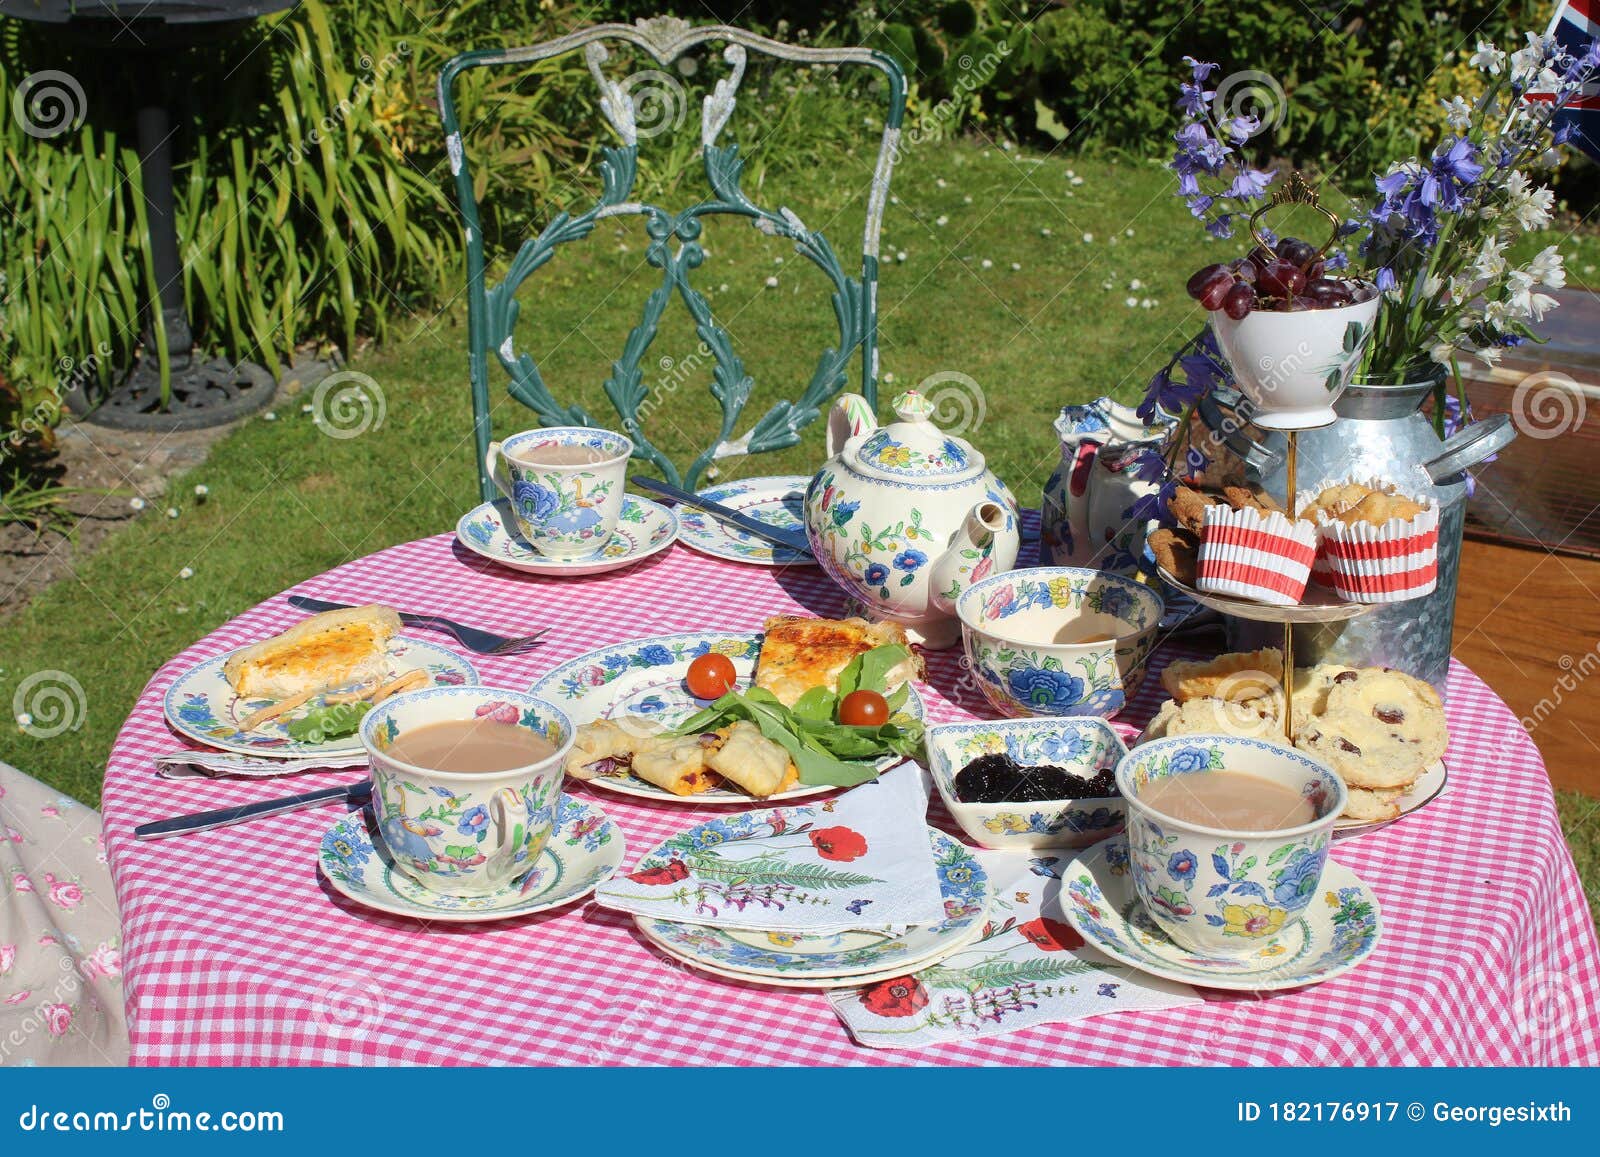 前花园下午茶桌图库摄影片 图片包括有视图 餐巾 茶碟 前面 烤饼 庆祝 蛋糕 桌布